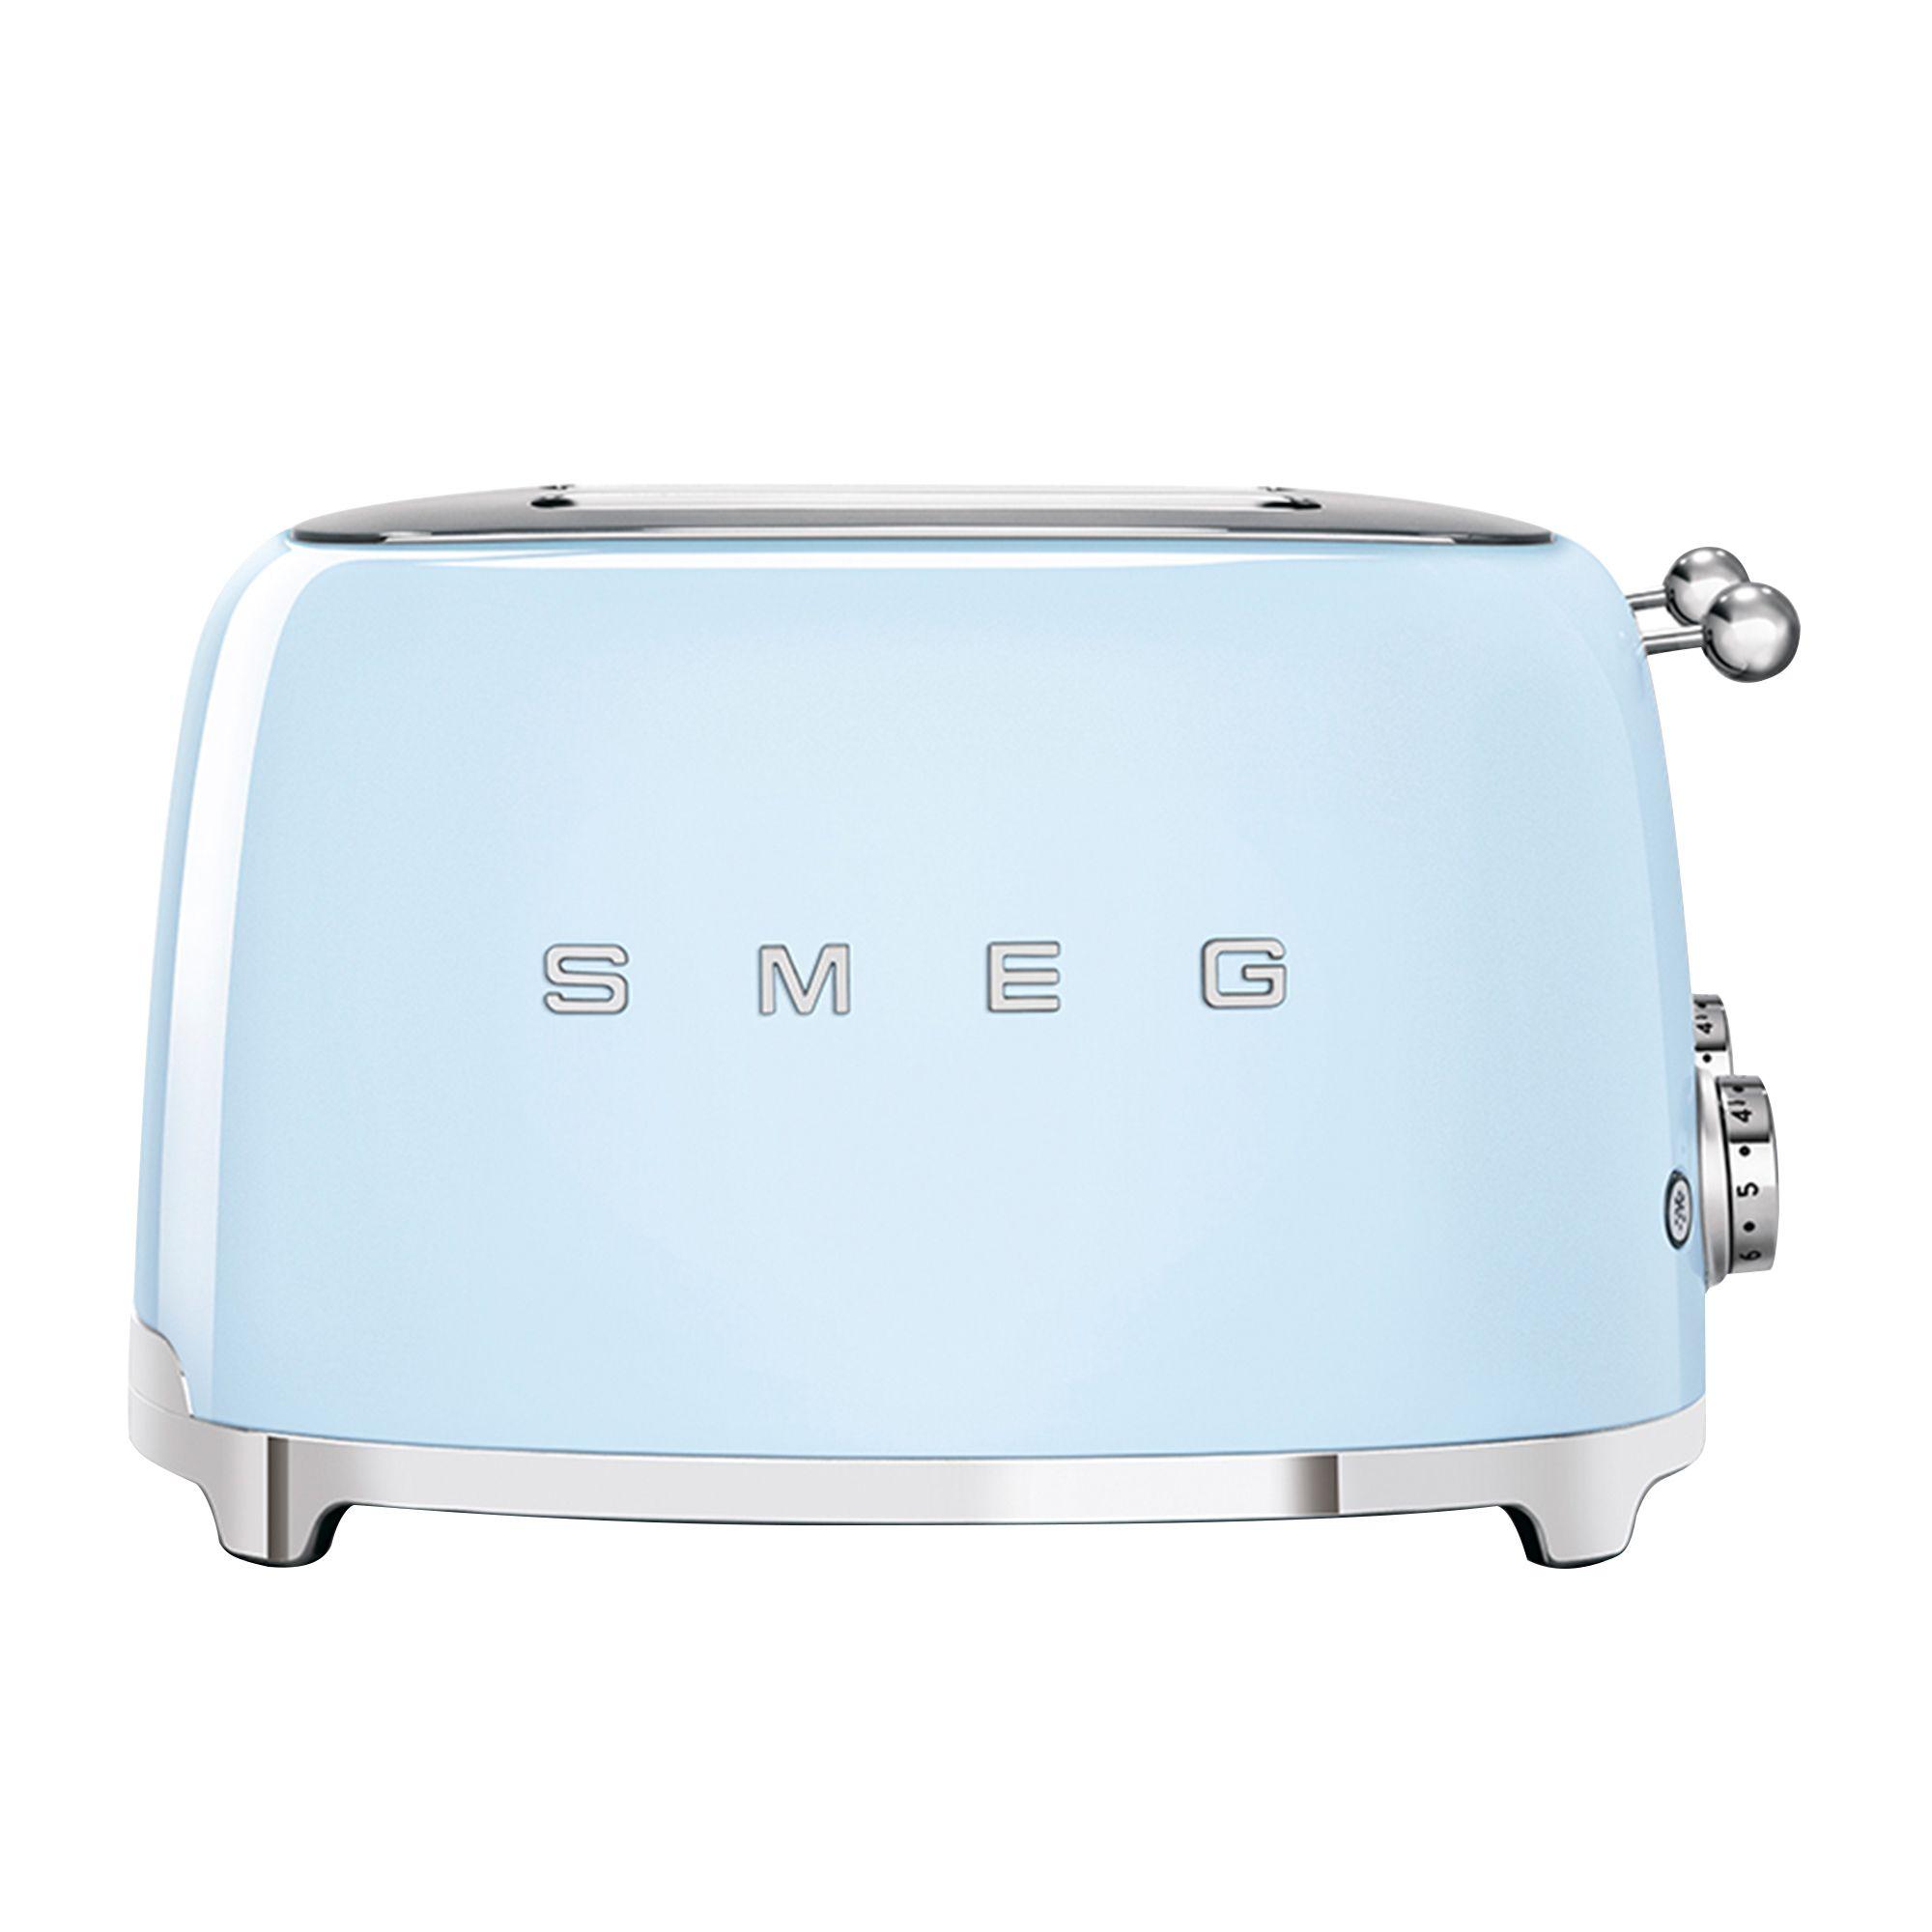 Smeg 50's Retro Style 4 Slot Toaster Pastel Blue Image 4